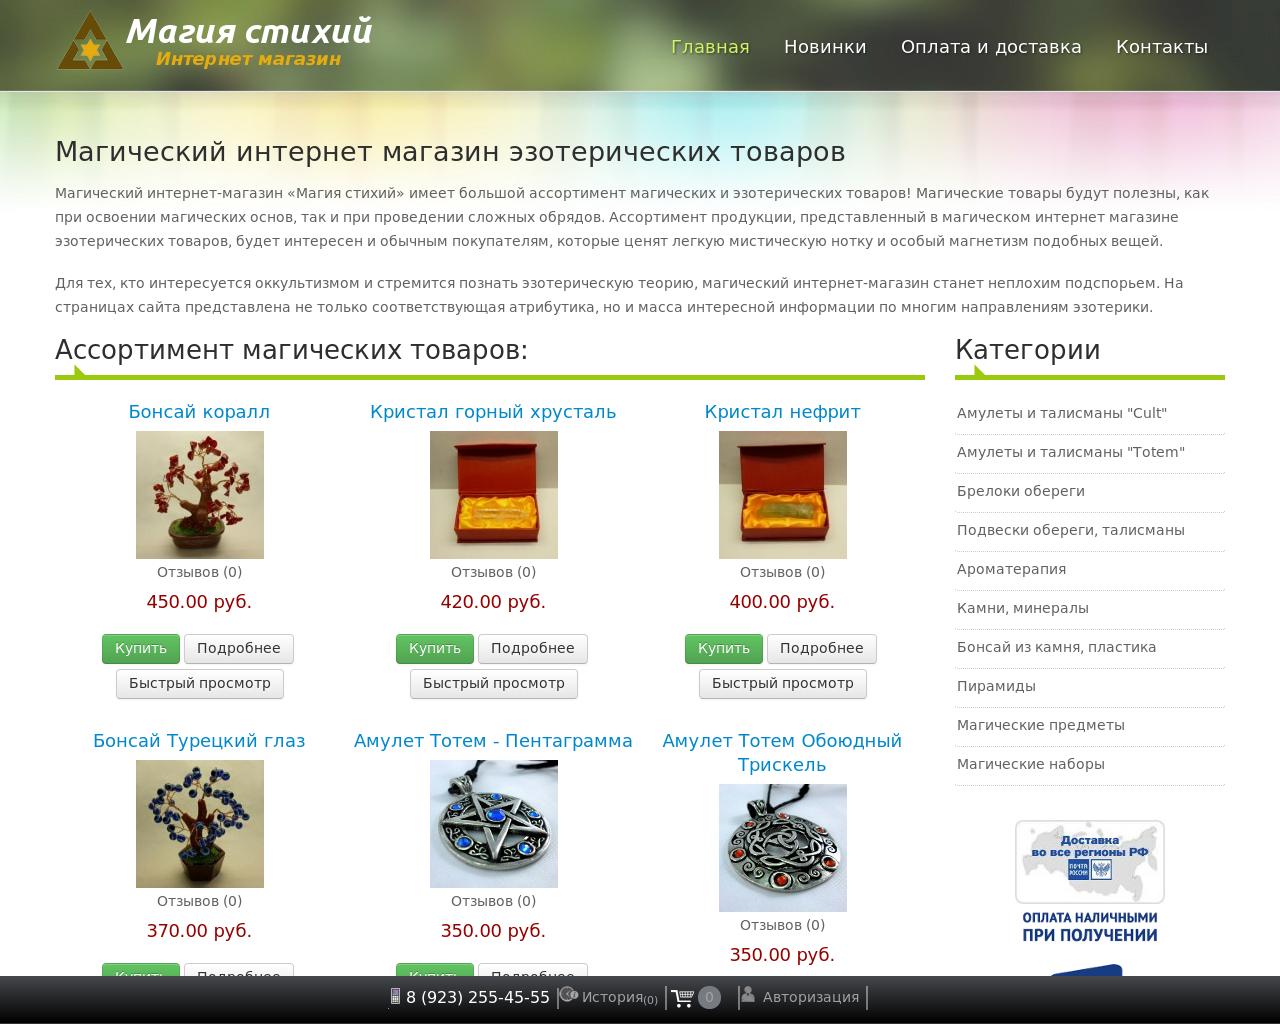 Изображение сайта magiaelements.ru в разрешении 1280x1024